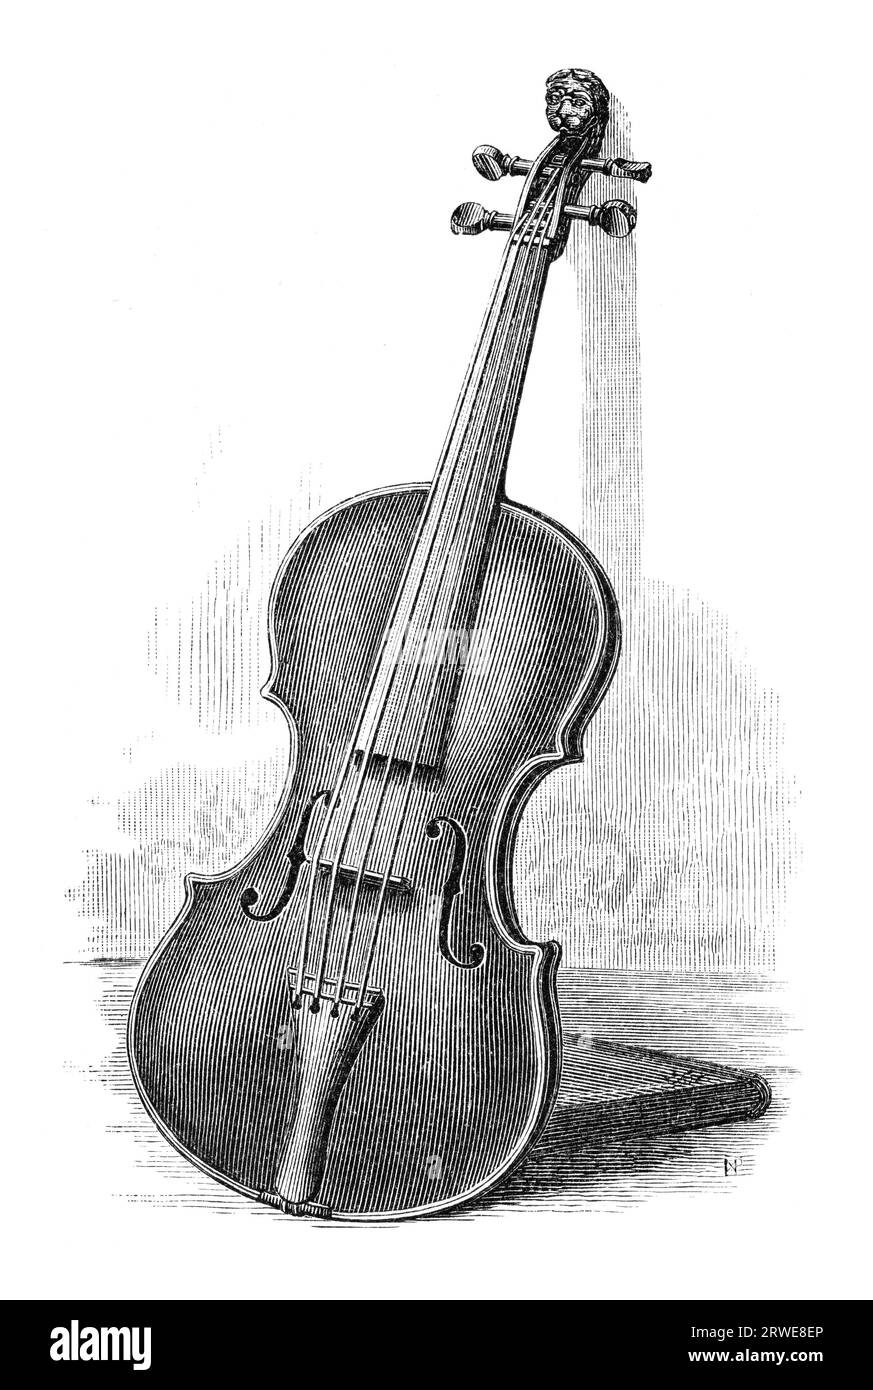 Ancienne gravure d'un violon. Gravure par un artiste inconnu de Harper's New Monthly Magazine, janvier 1881 Banque D'Images